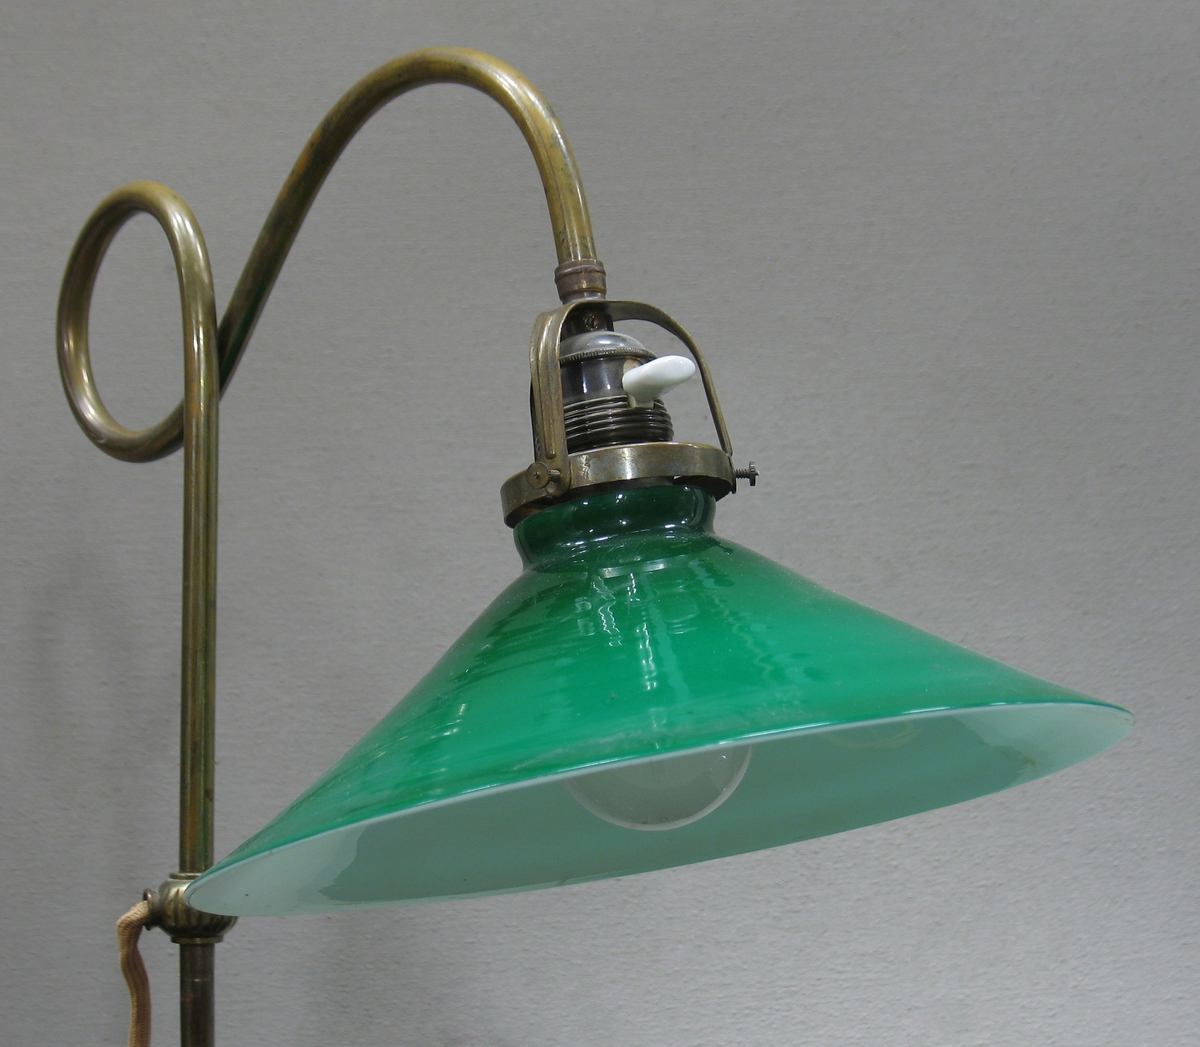 Skrivbordslampa med fot i mässing och grön glaskupa. Både fot och ställning är fint dekorerade och från mitten av ställningen löper en sladd som avslutas med stickpropp. En glödlampa är fäst innanför kupan.